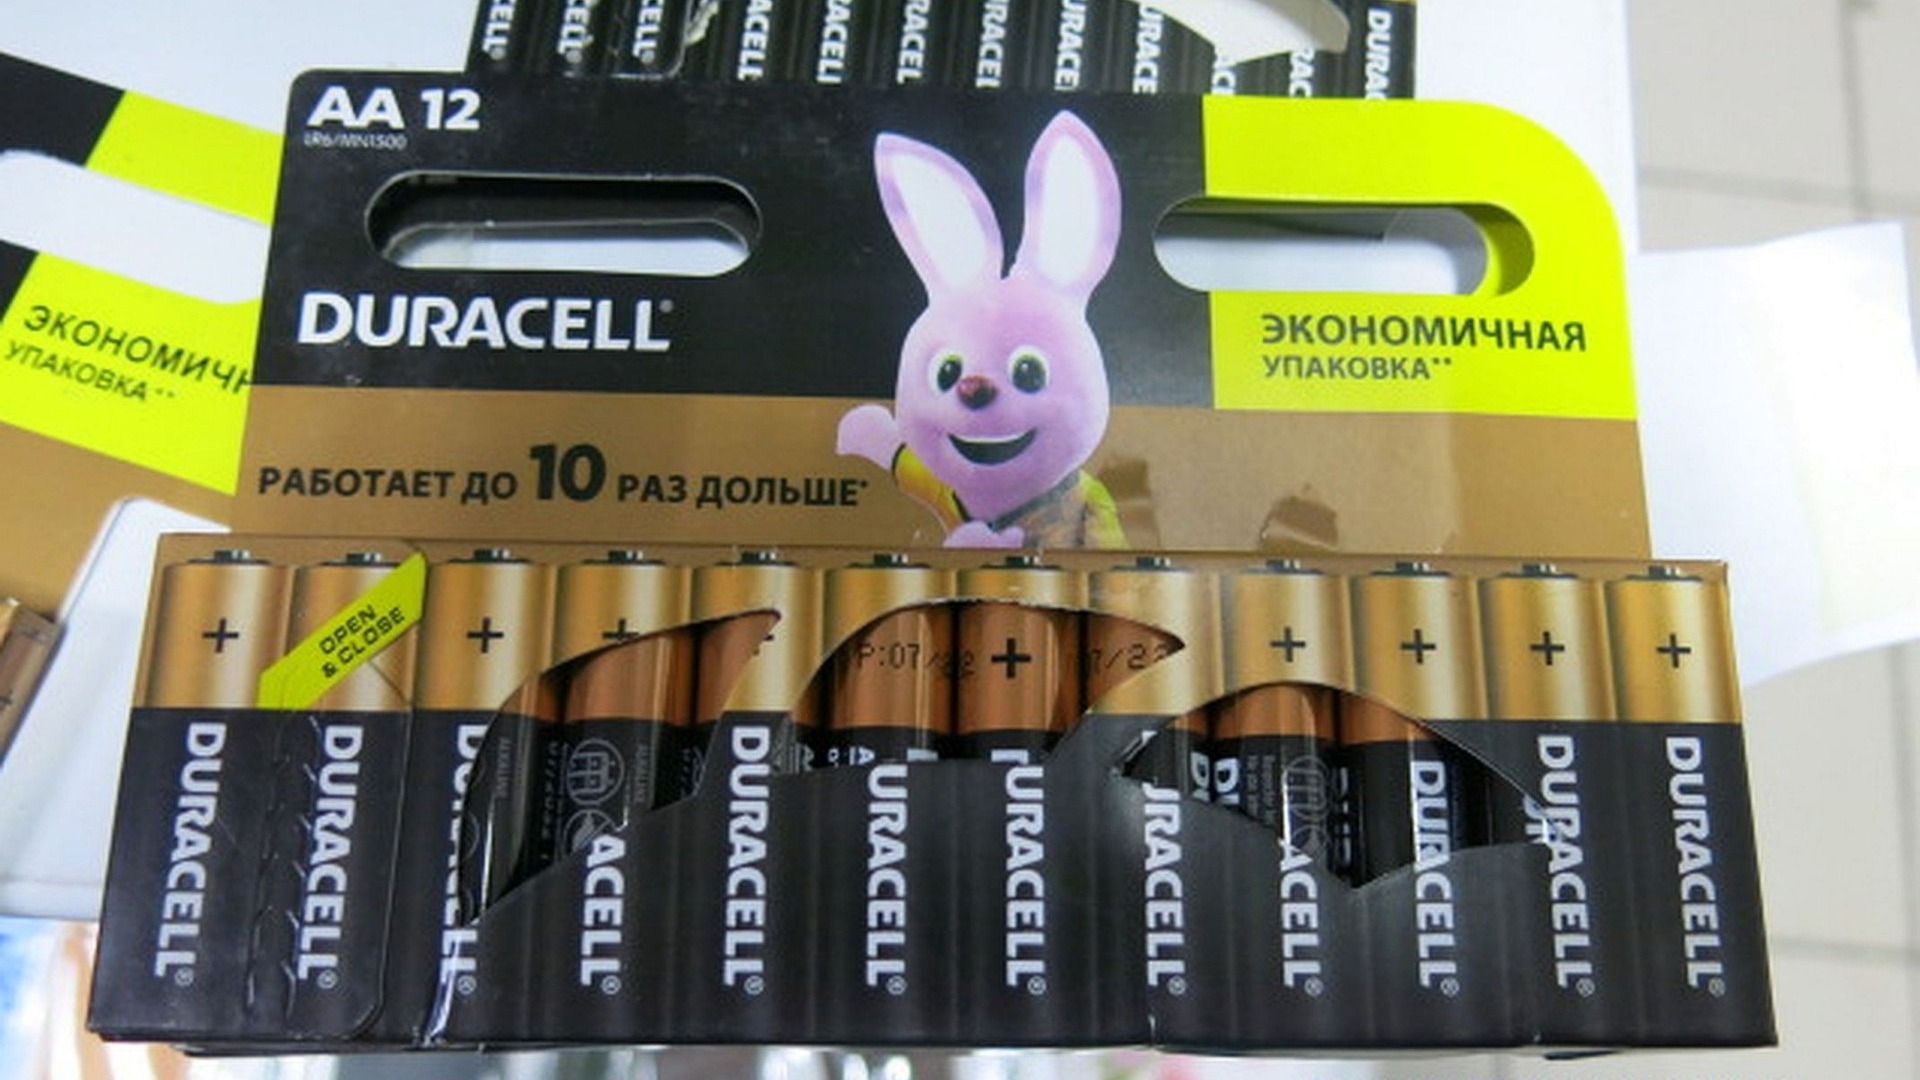 У омского бизнесмена изъяли две тысячи поддельных батареек известного бренда